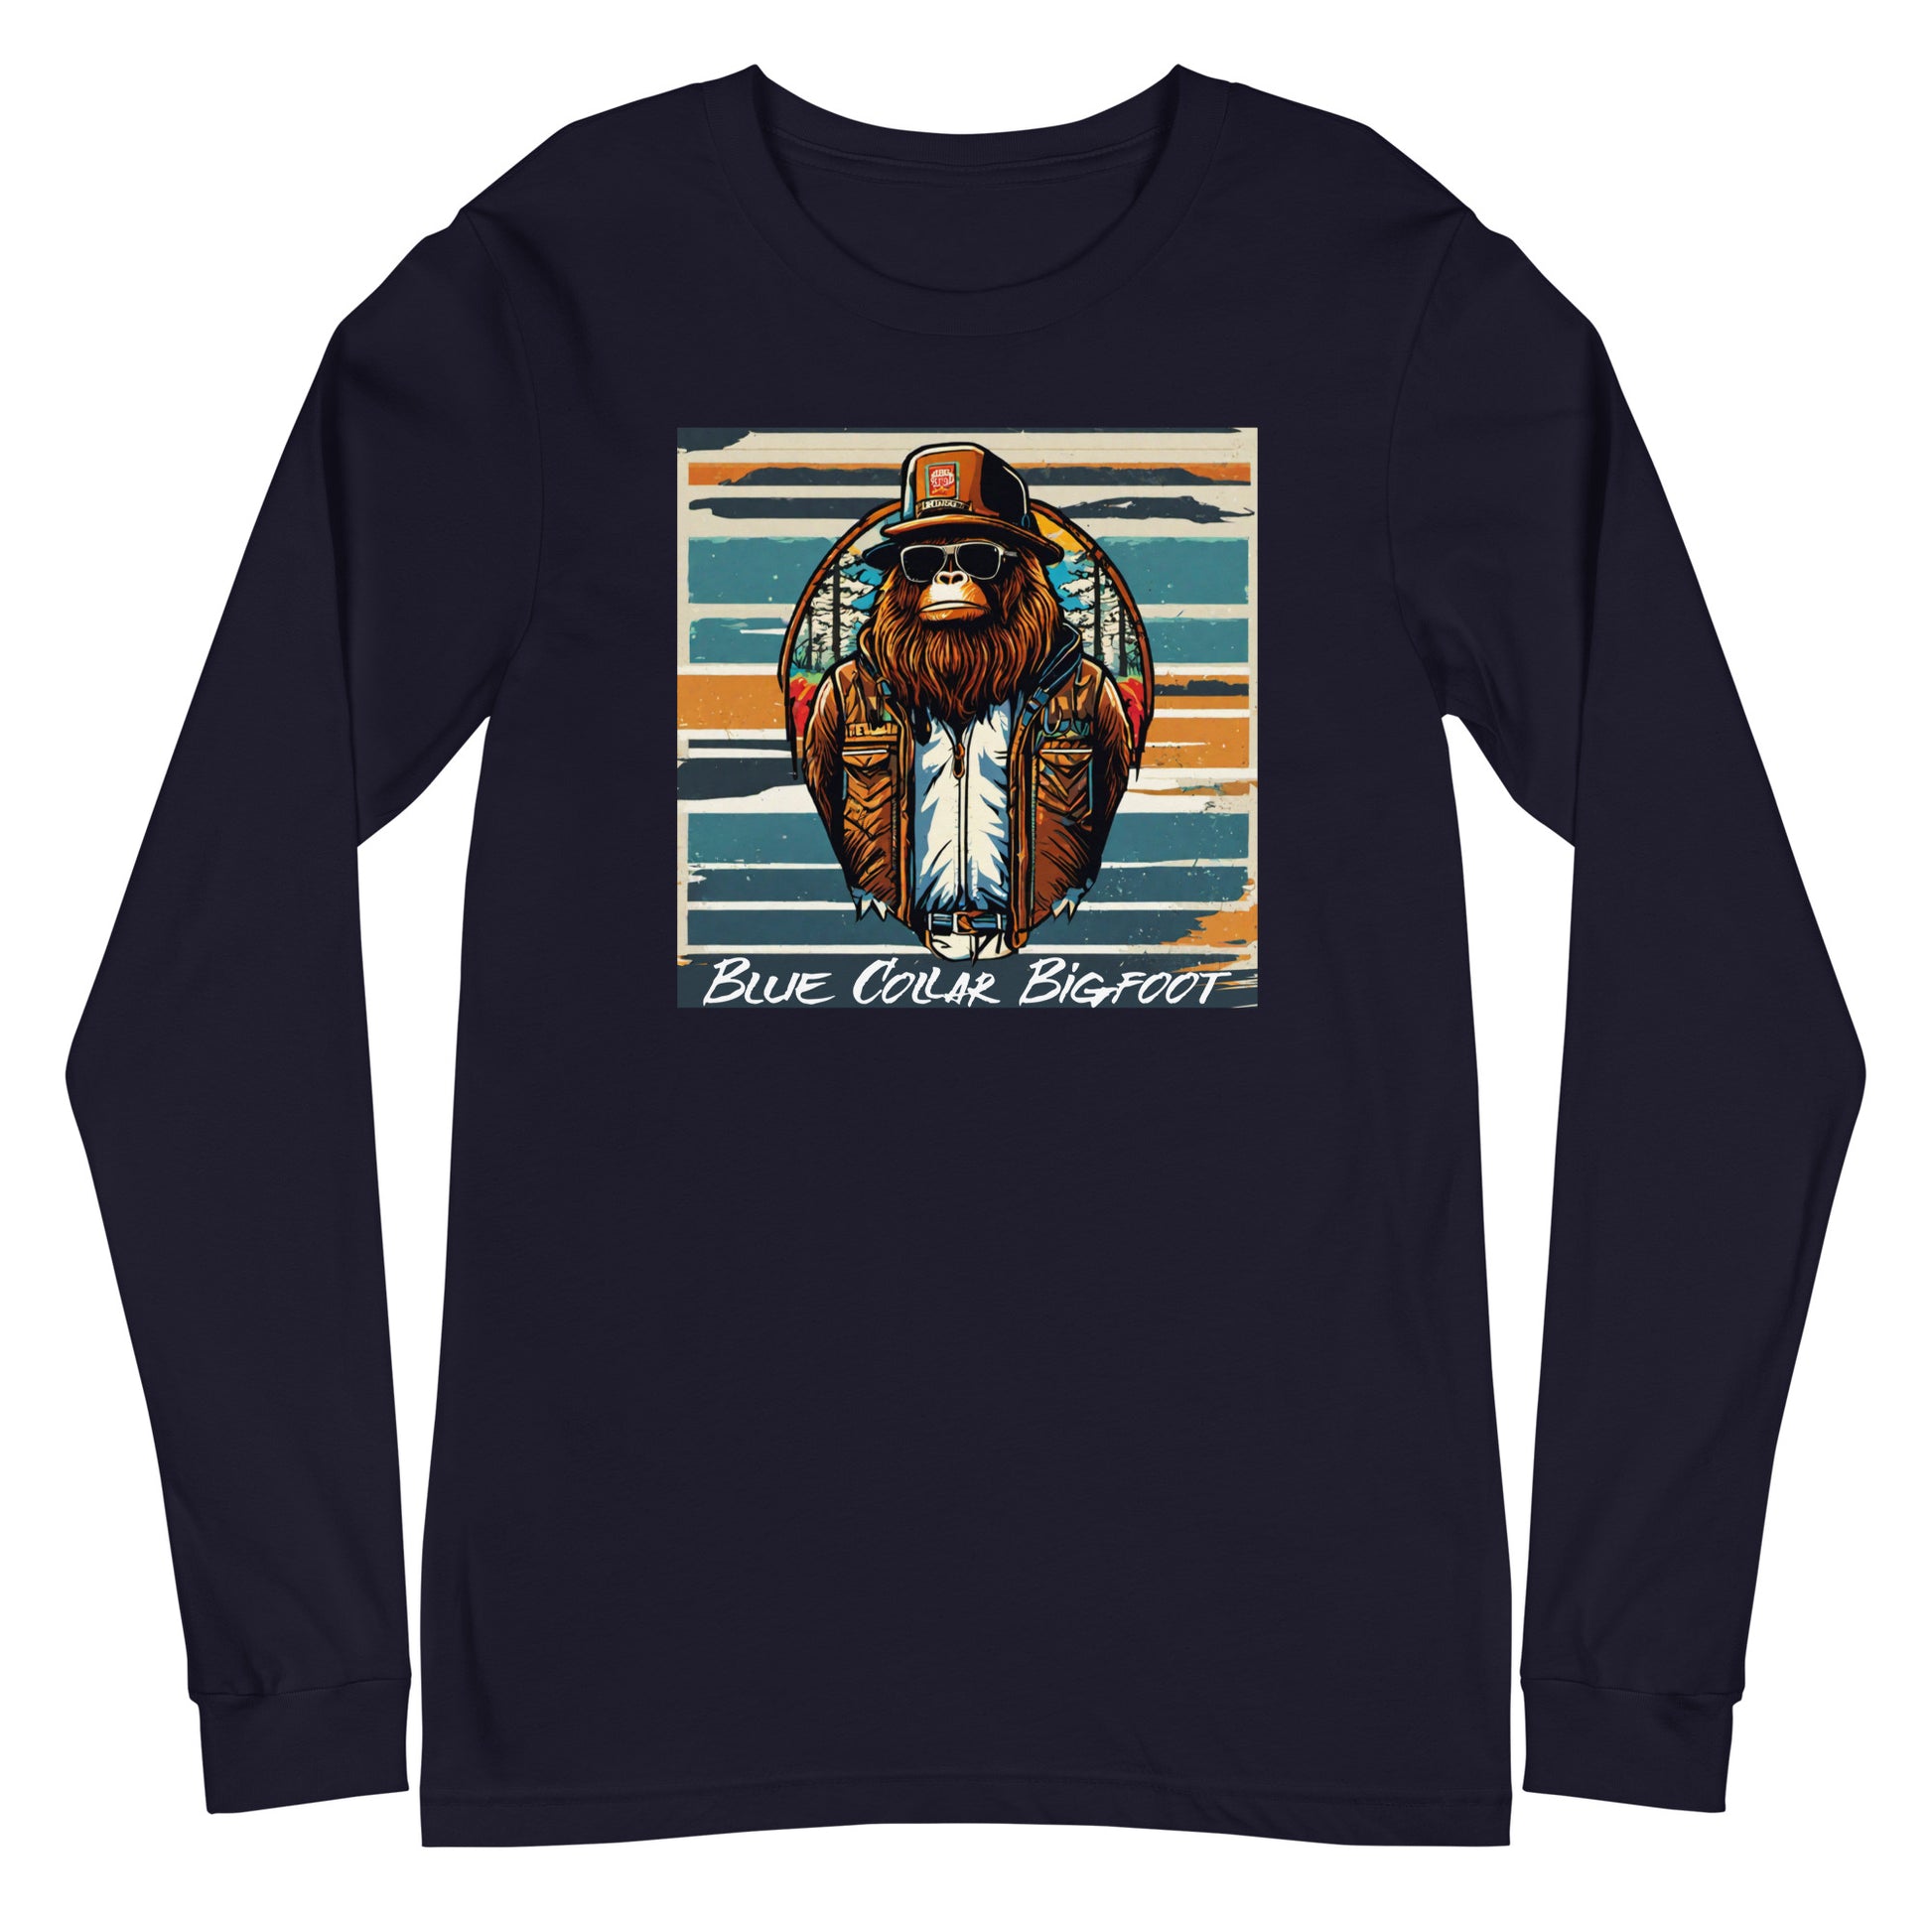 Blue-Collar Bigfoot Long Sleeve Tee Navy